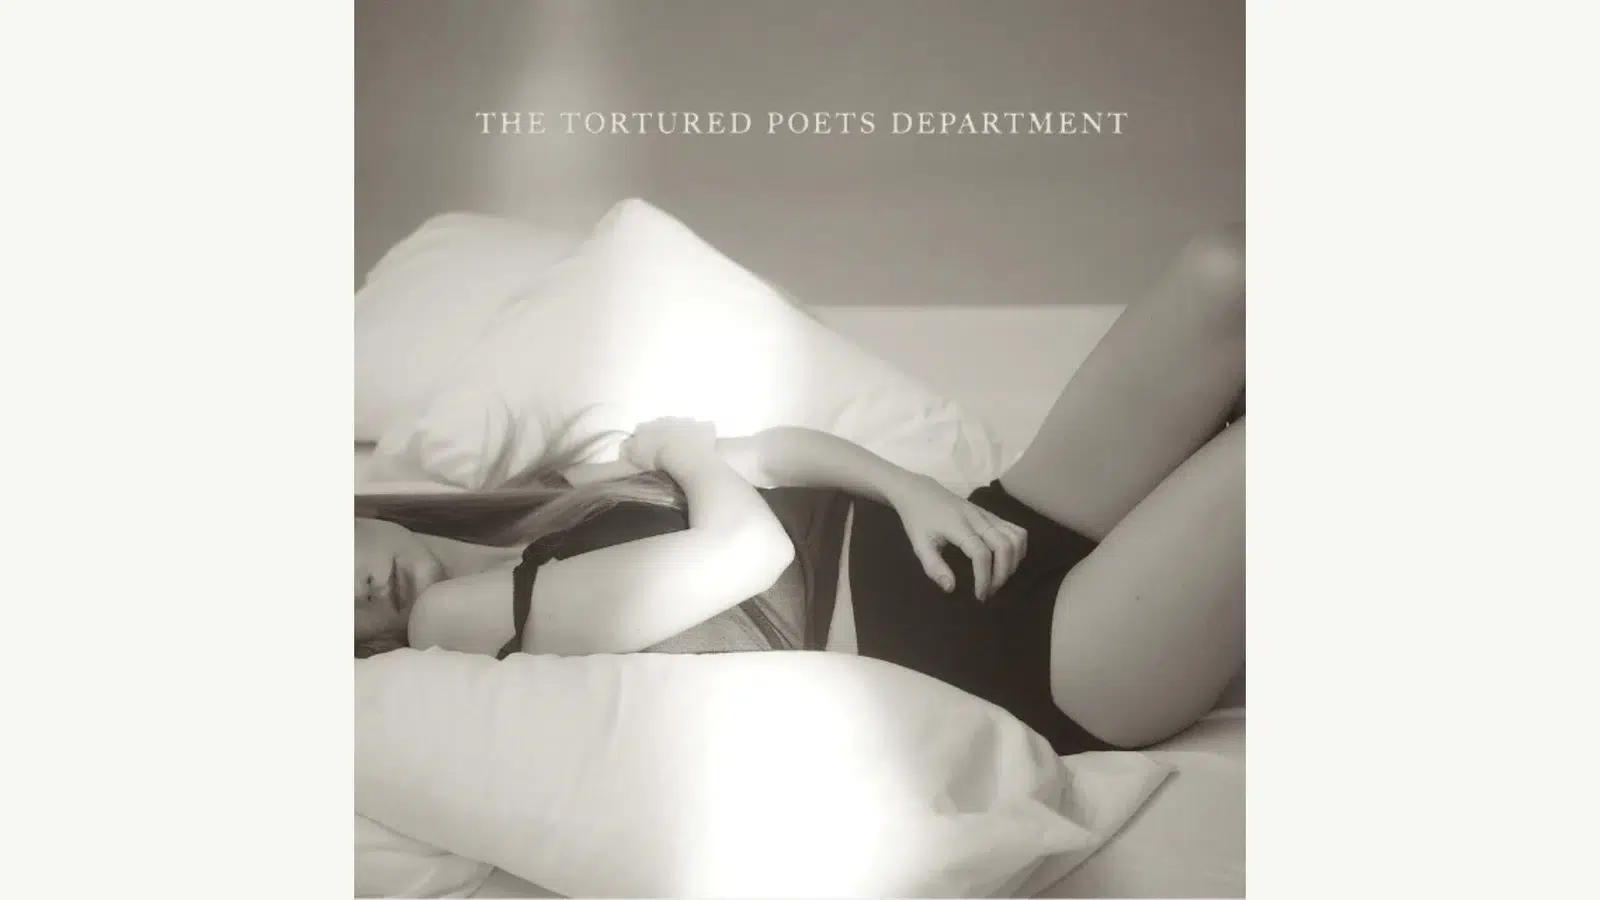 Taylor swift busca inspiración en sus musas para superar un desamor en su nuevo álbum doble, ‘the tortured poets department’.